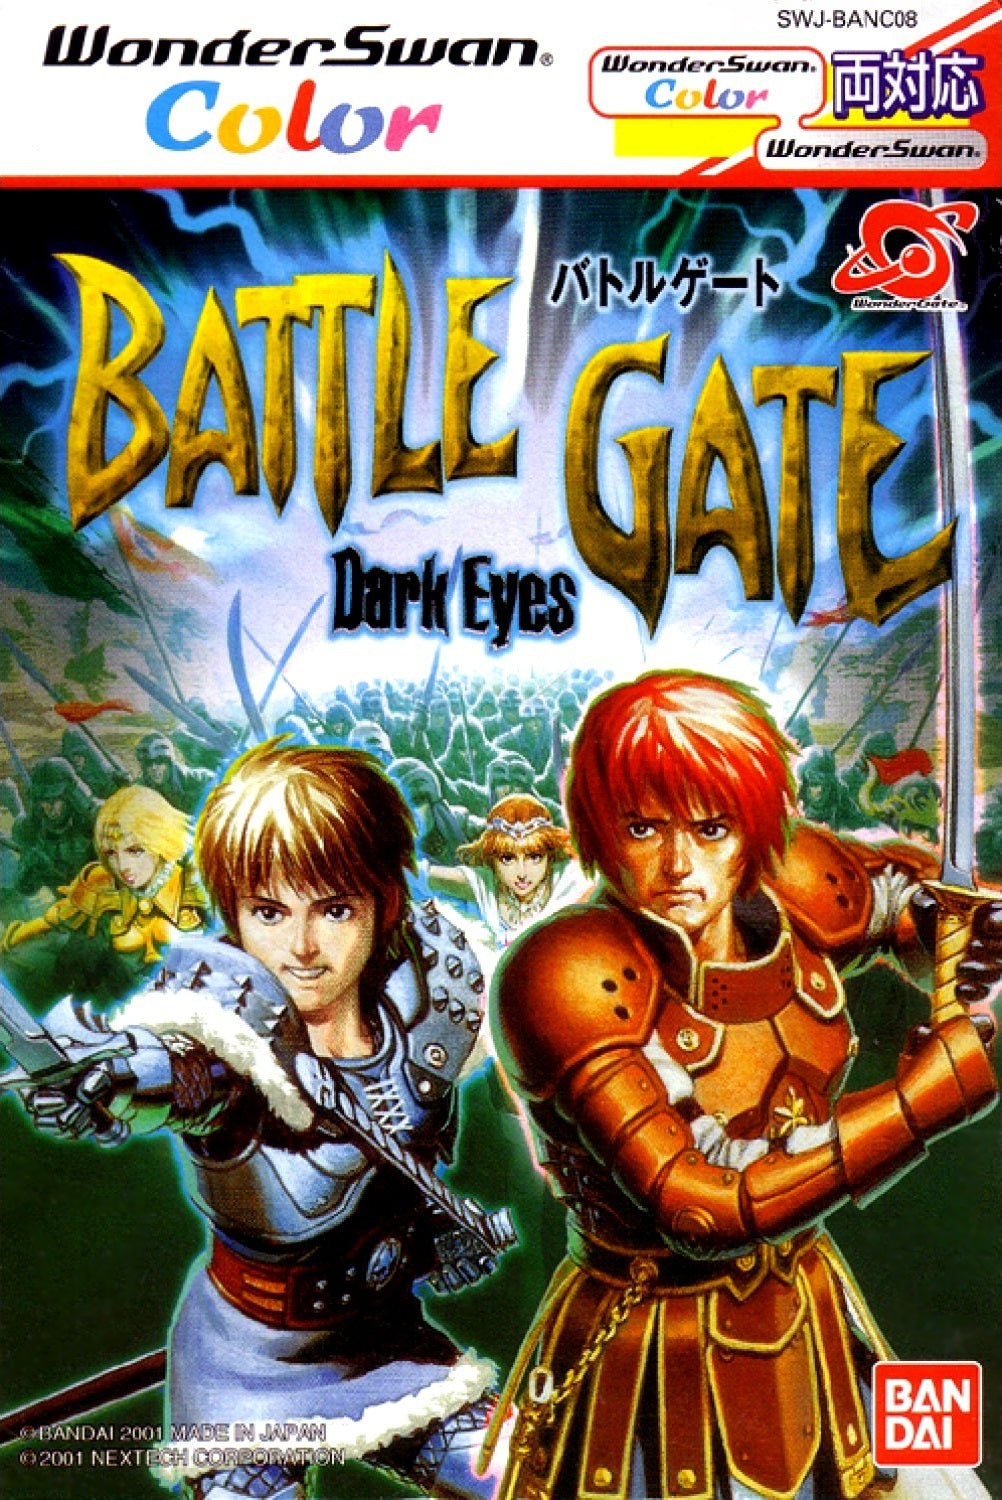 Dark Eyes: BattleGate - (WSC) WonderSwan Color [Pre-Owned] (Japanese Import) Video Games Bandai   